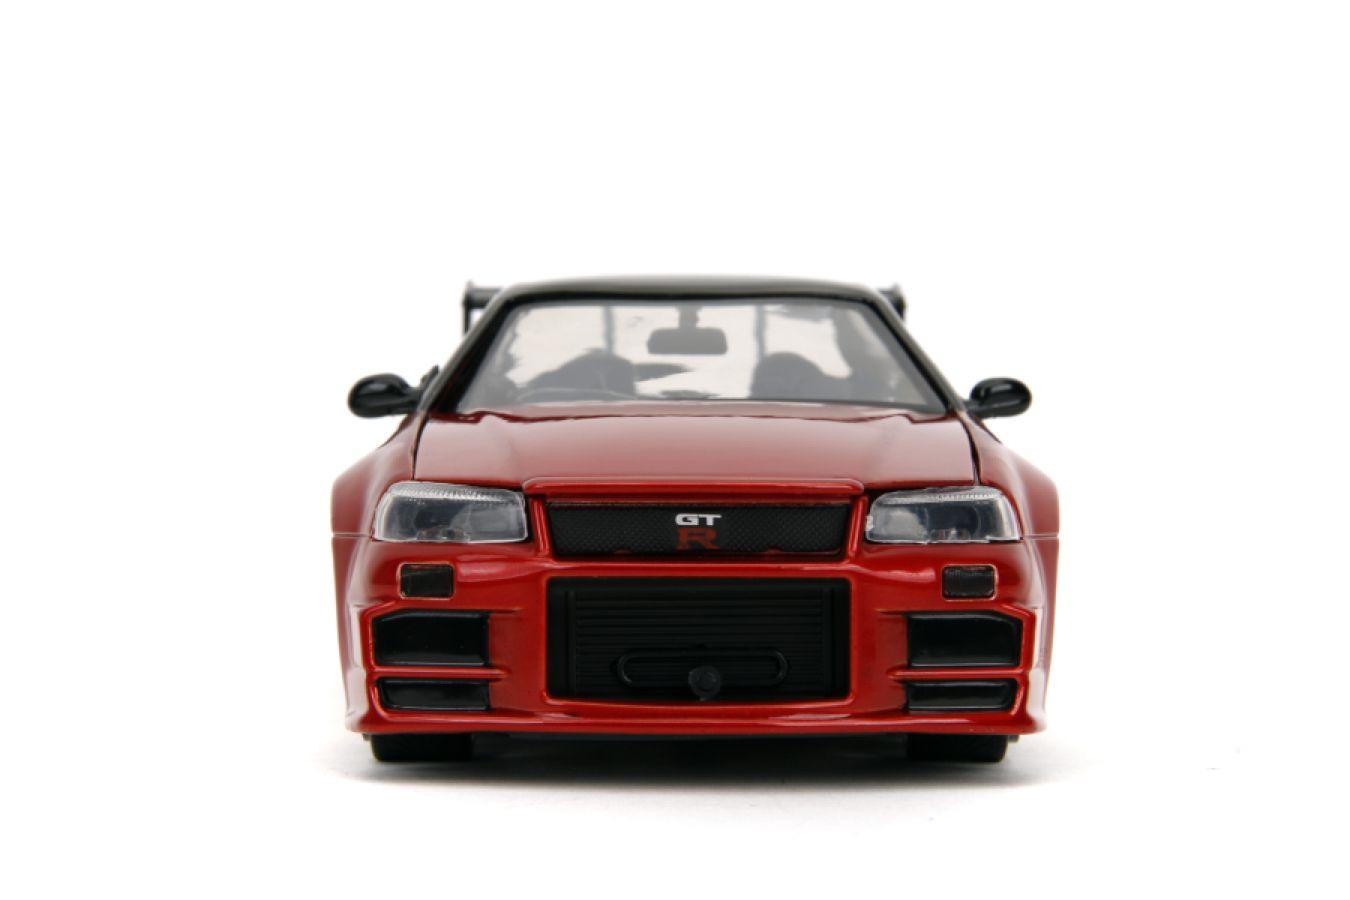 JAD35133 Godzilla - Nissan GTR 1:24 Scale Diecast Vehicle - Jada Toys - Titan Pop Culture